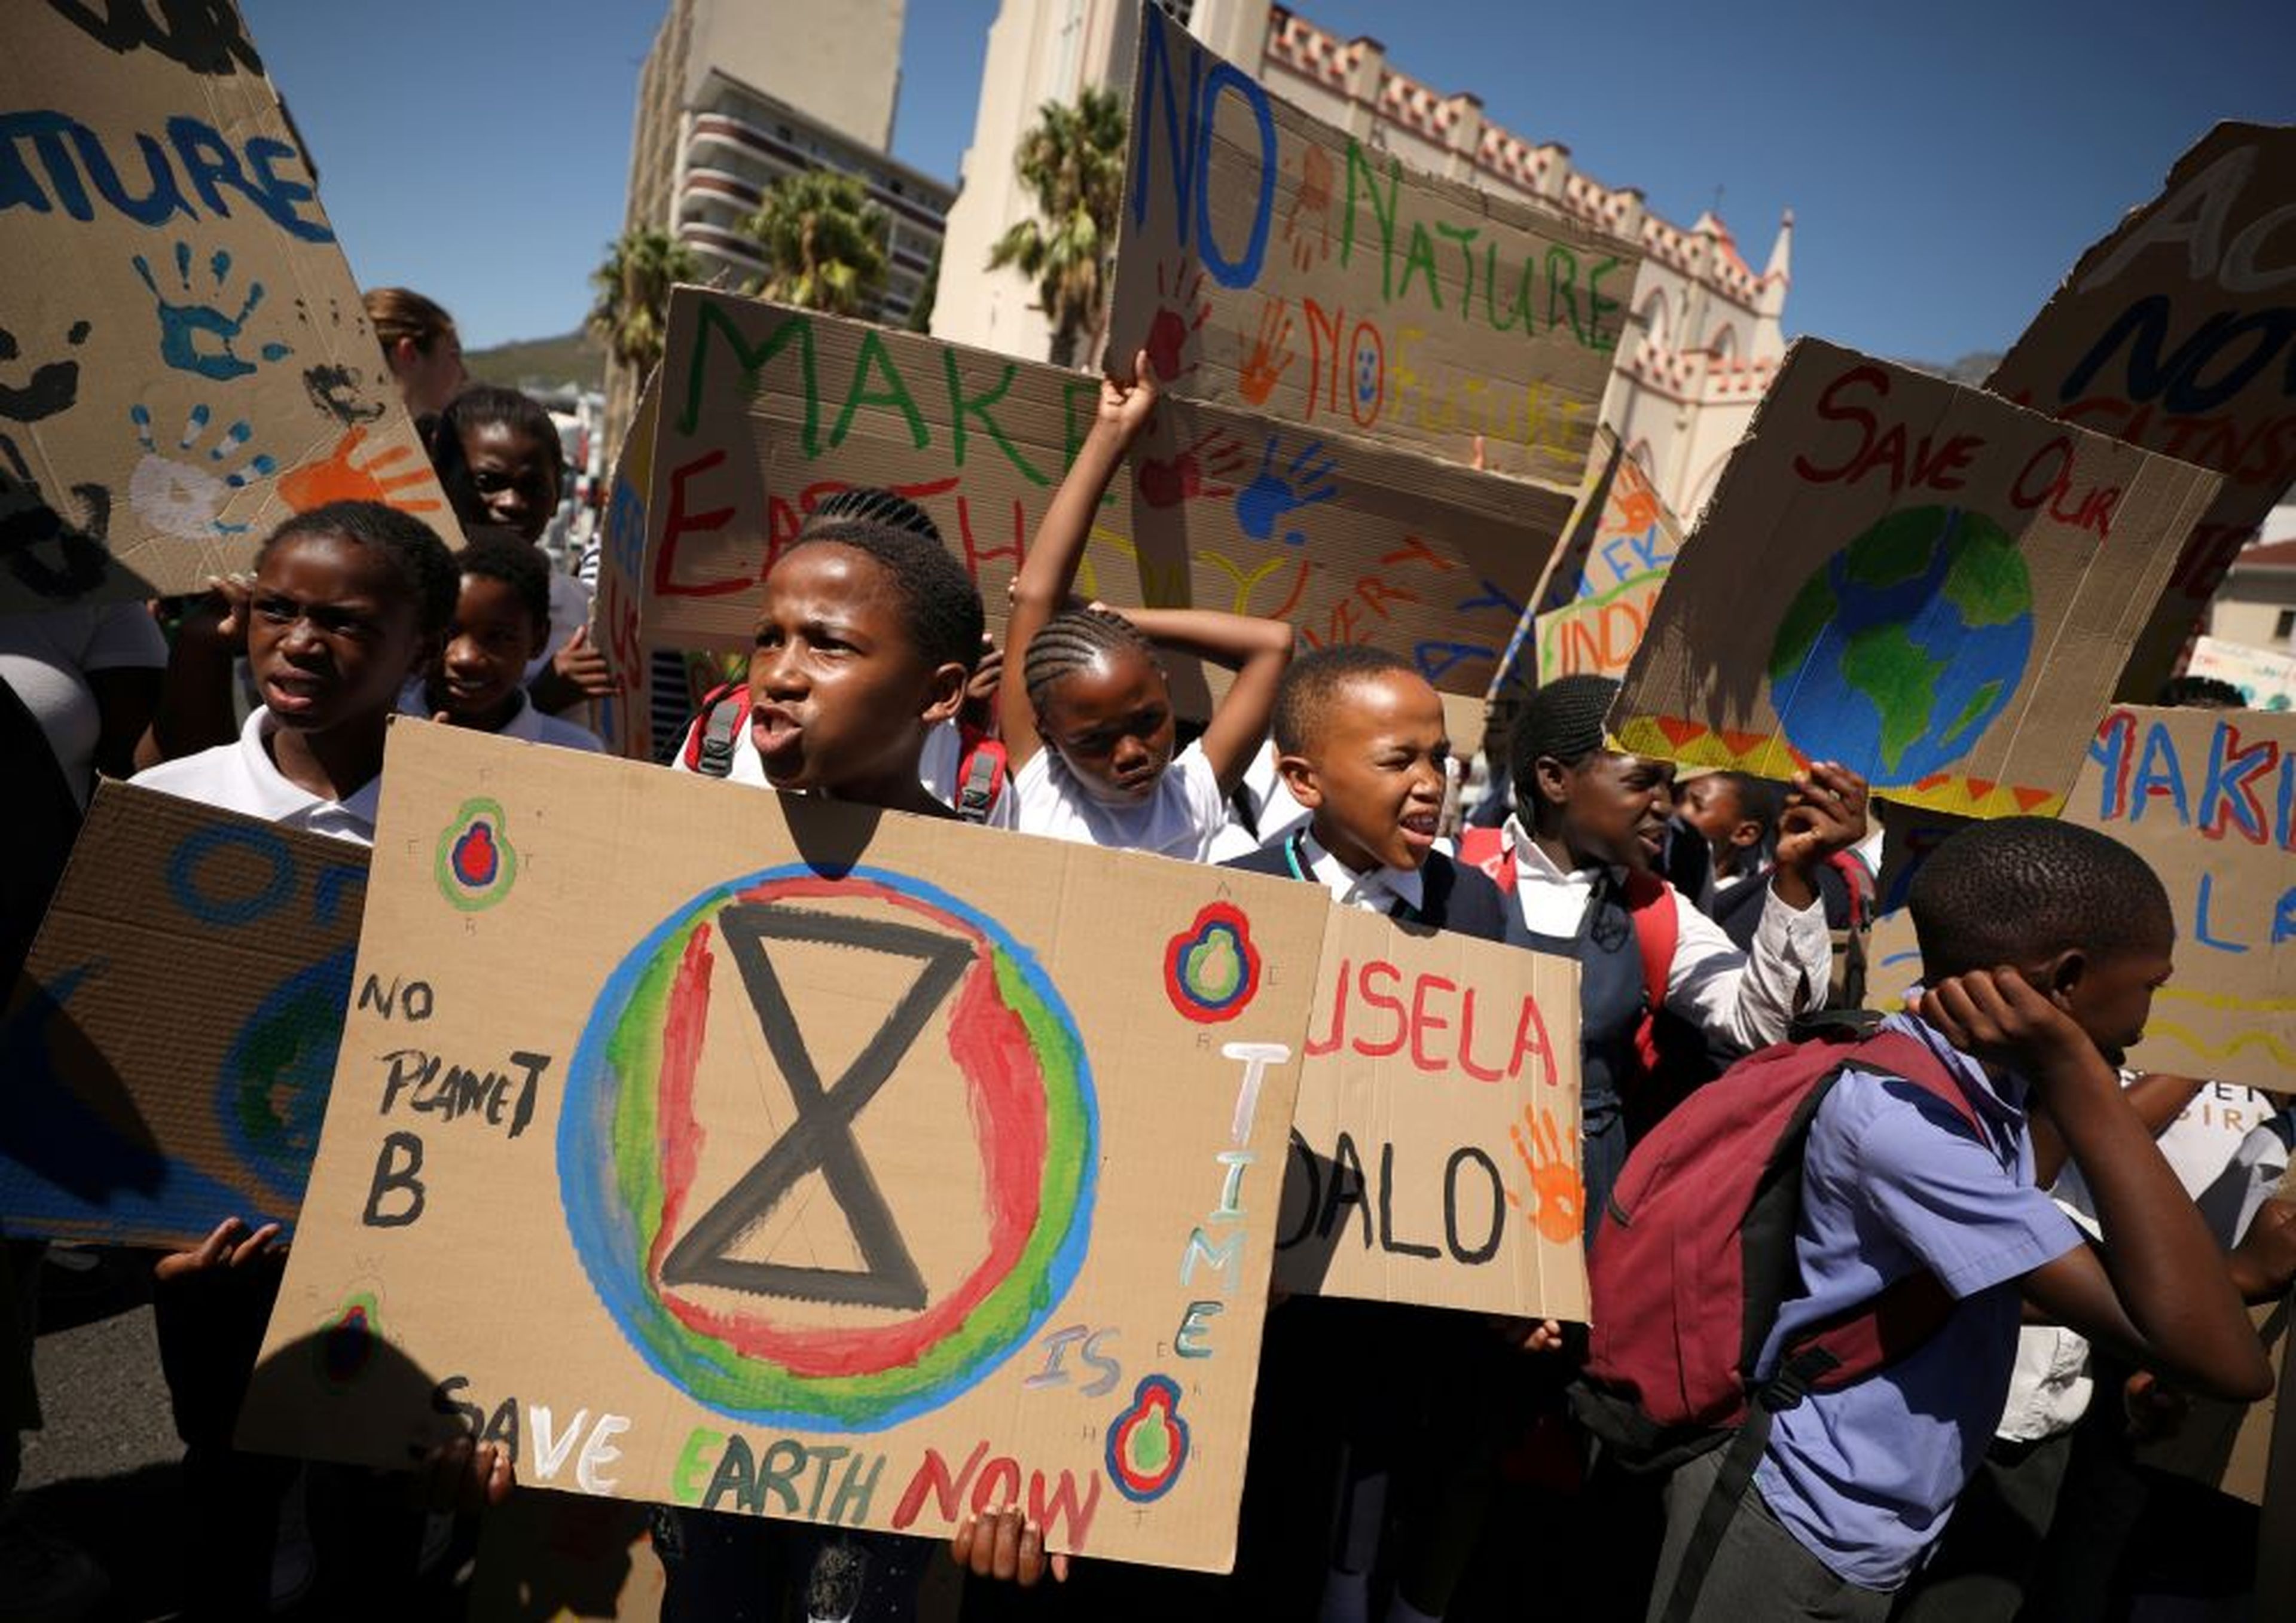 Huelga por el clima en Sudáfrica